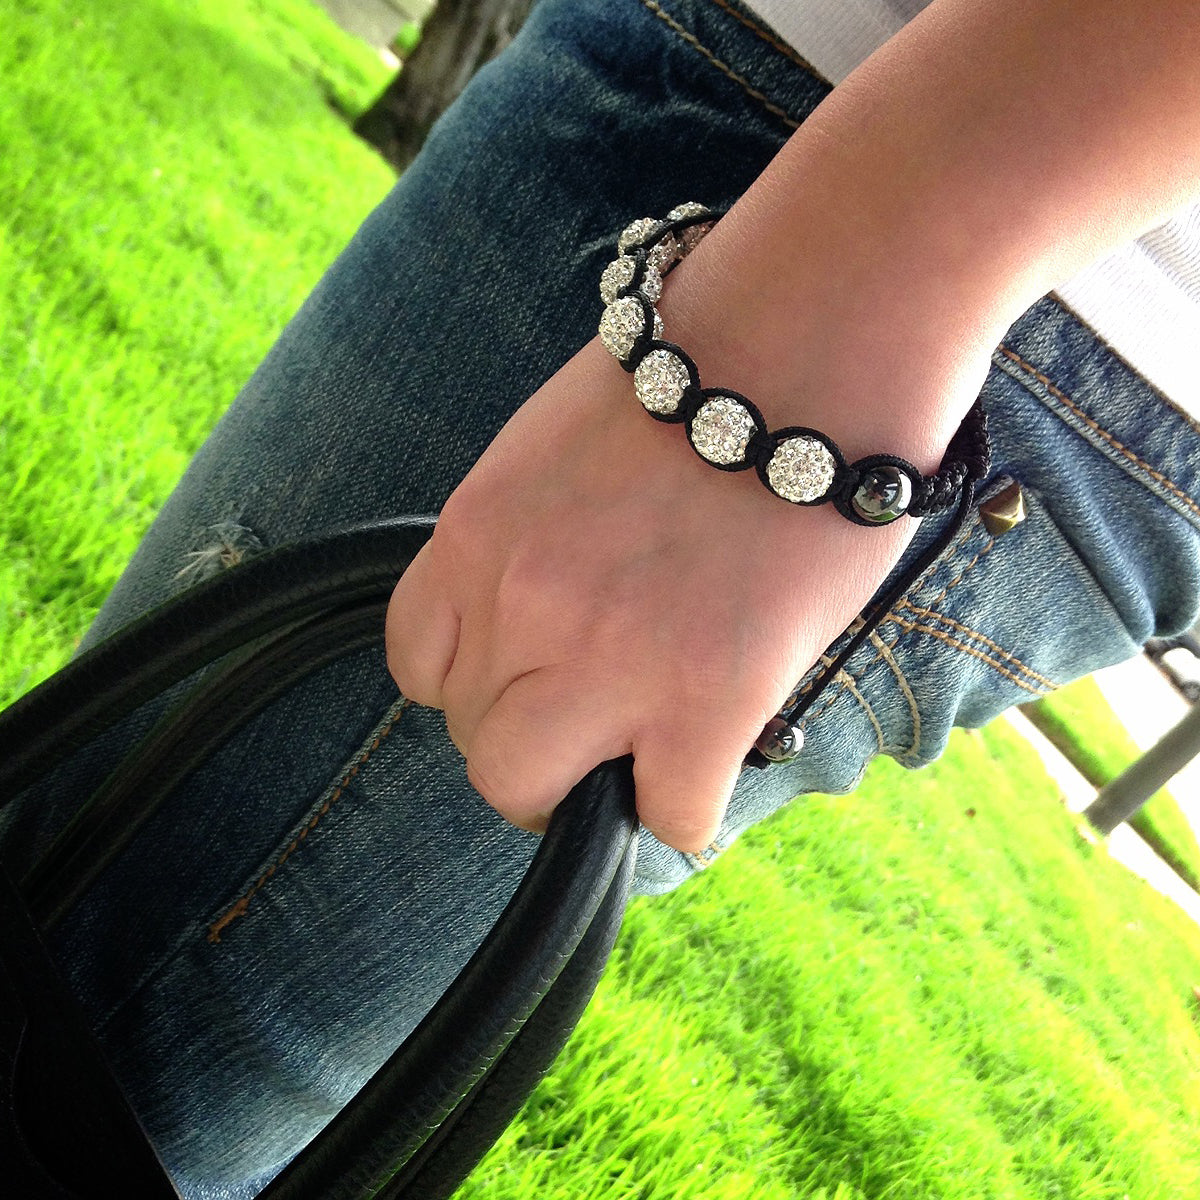 Bracelet with White Rhinestone Studded Beads